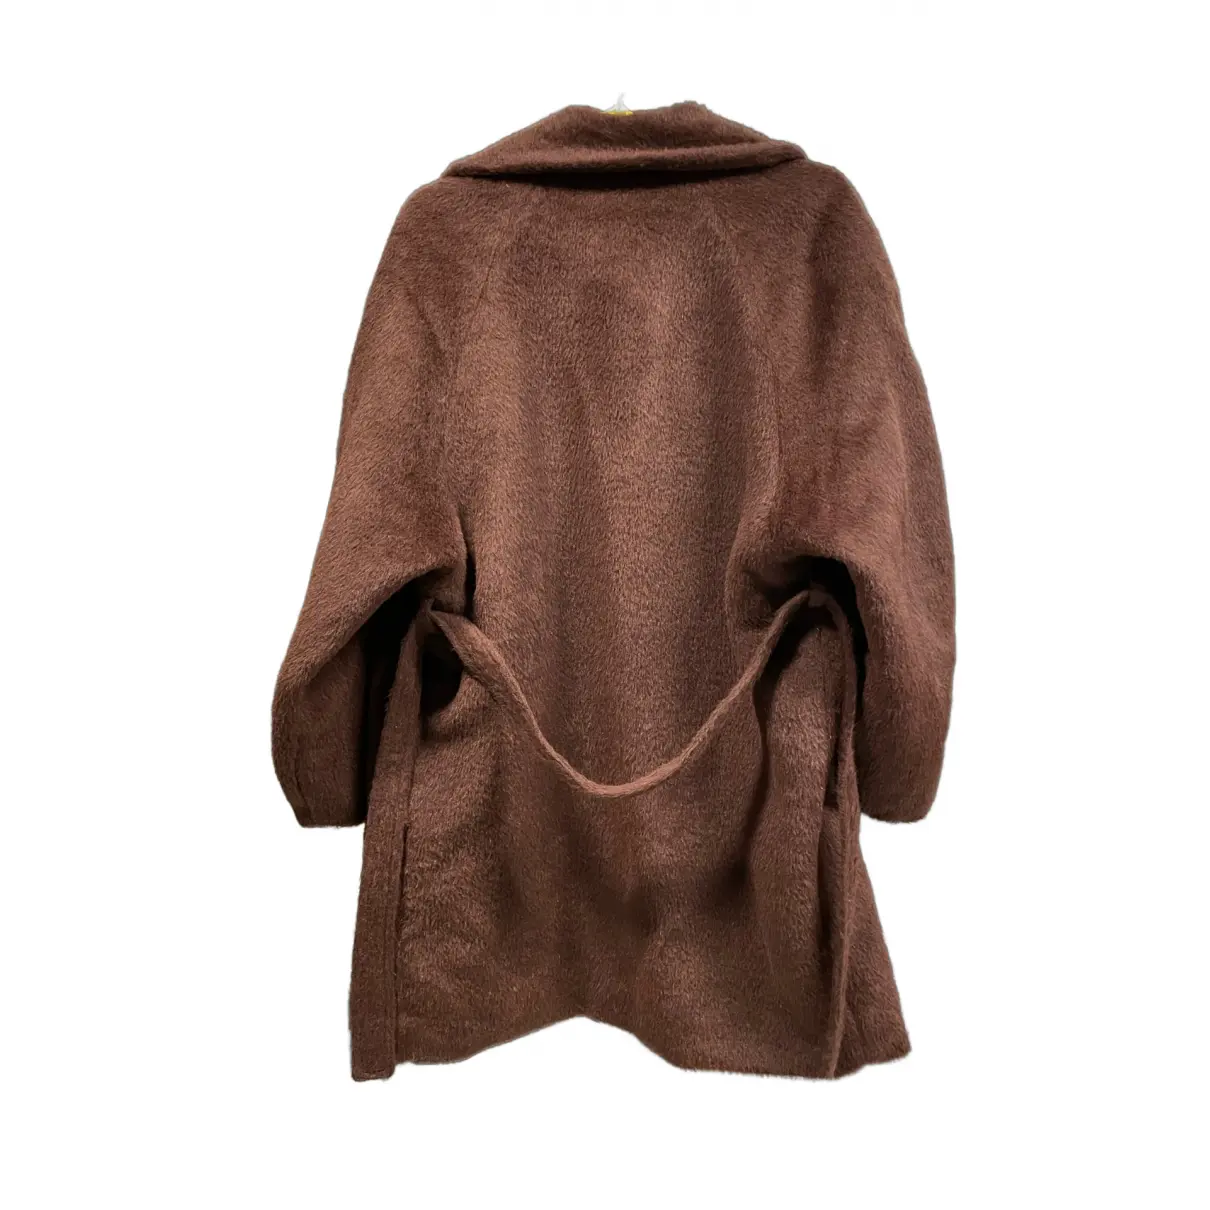 Buy Henrik Vibskov Wool coat online